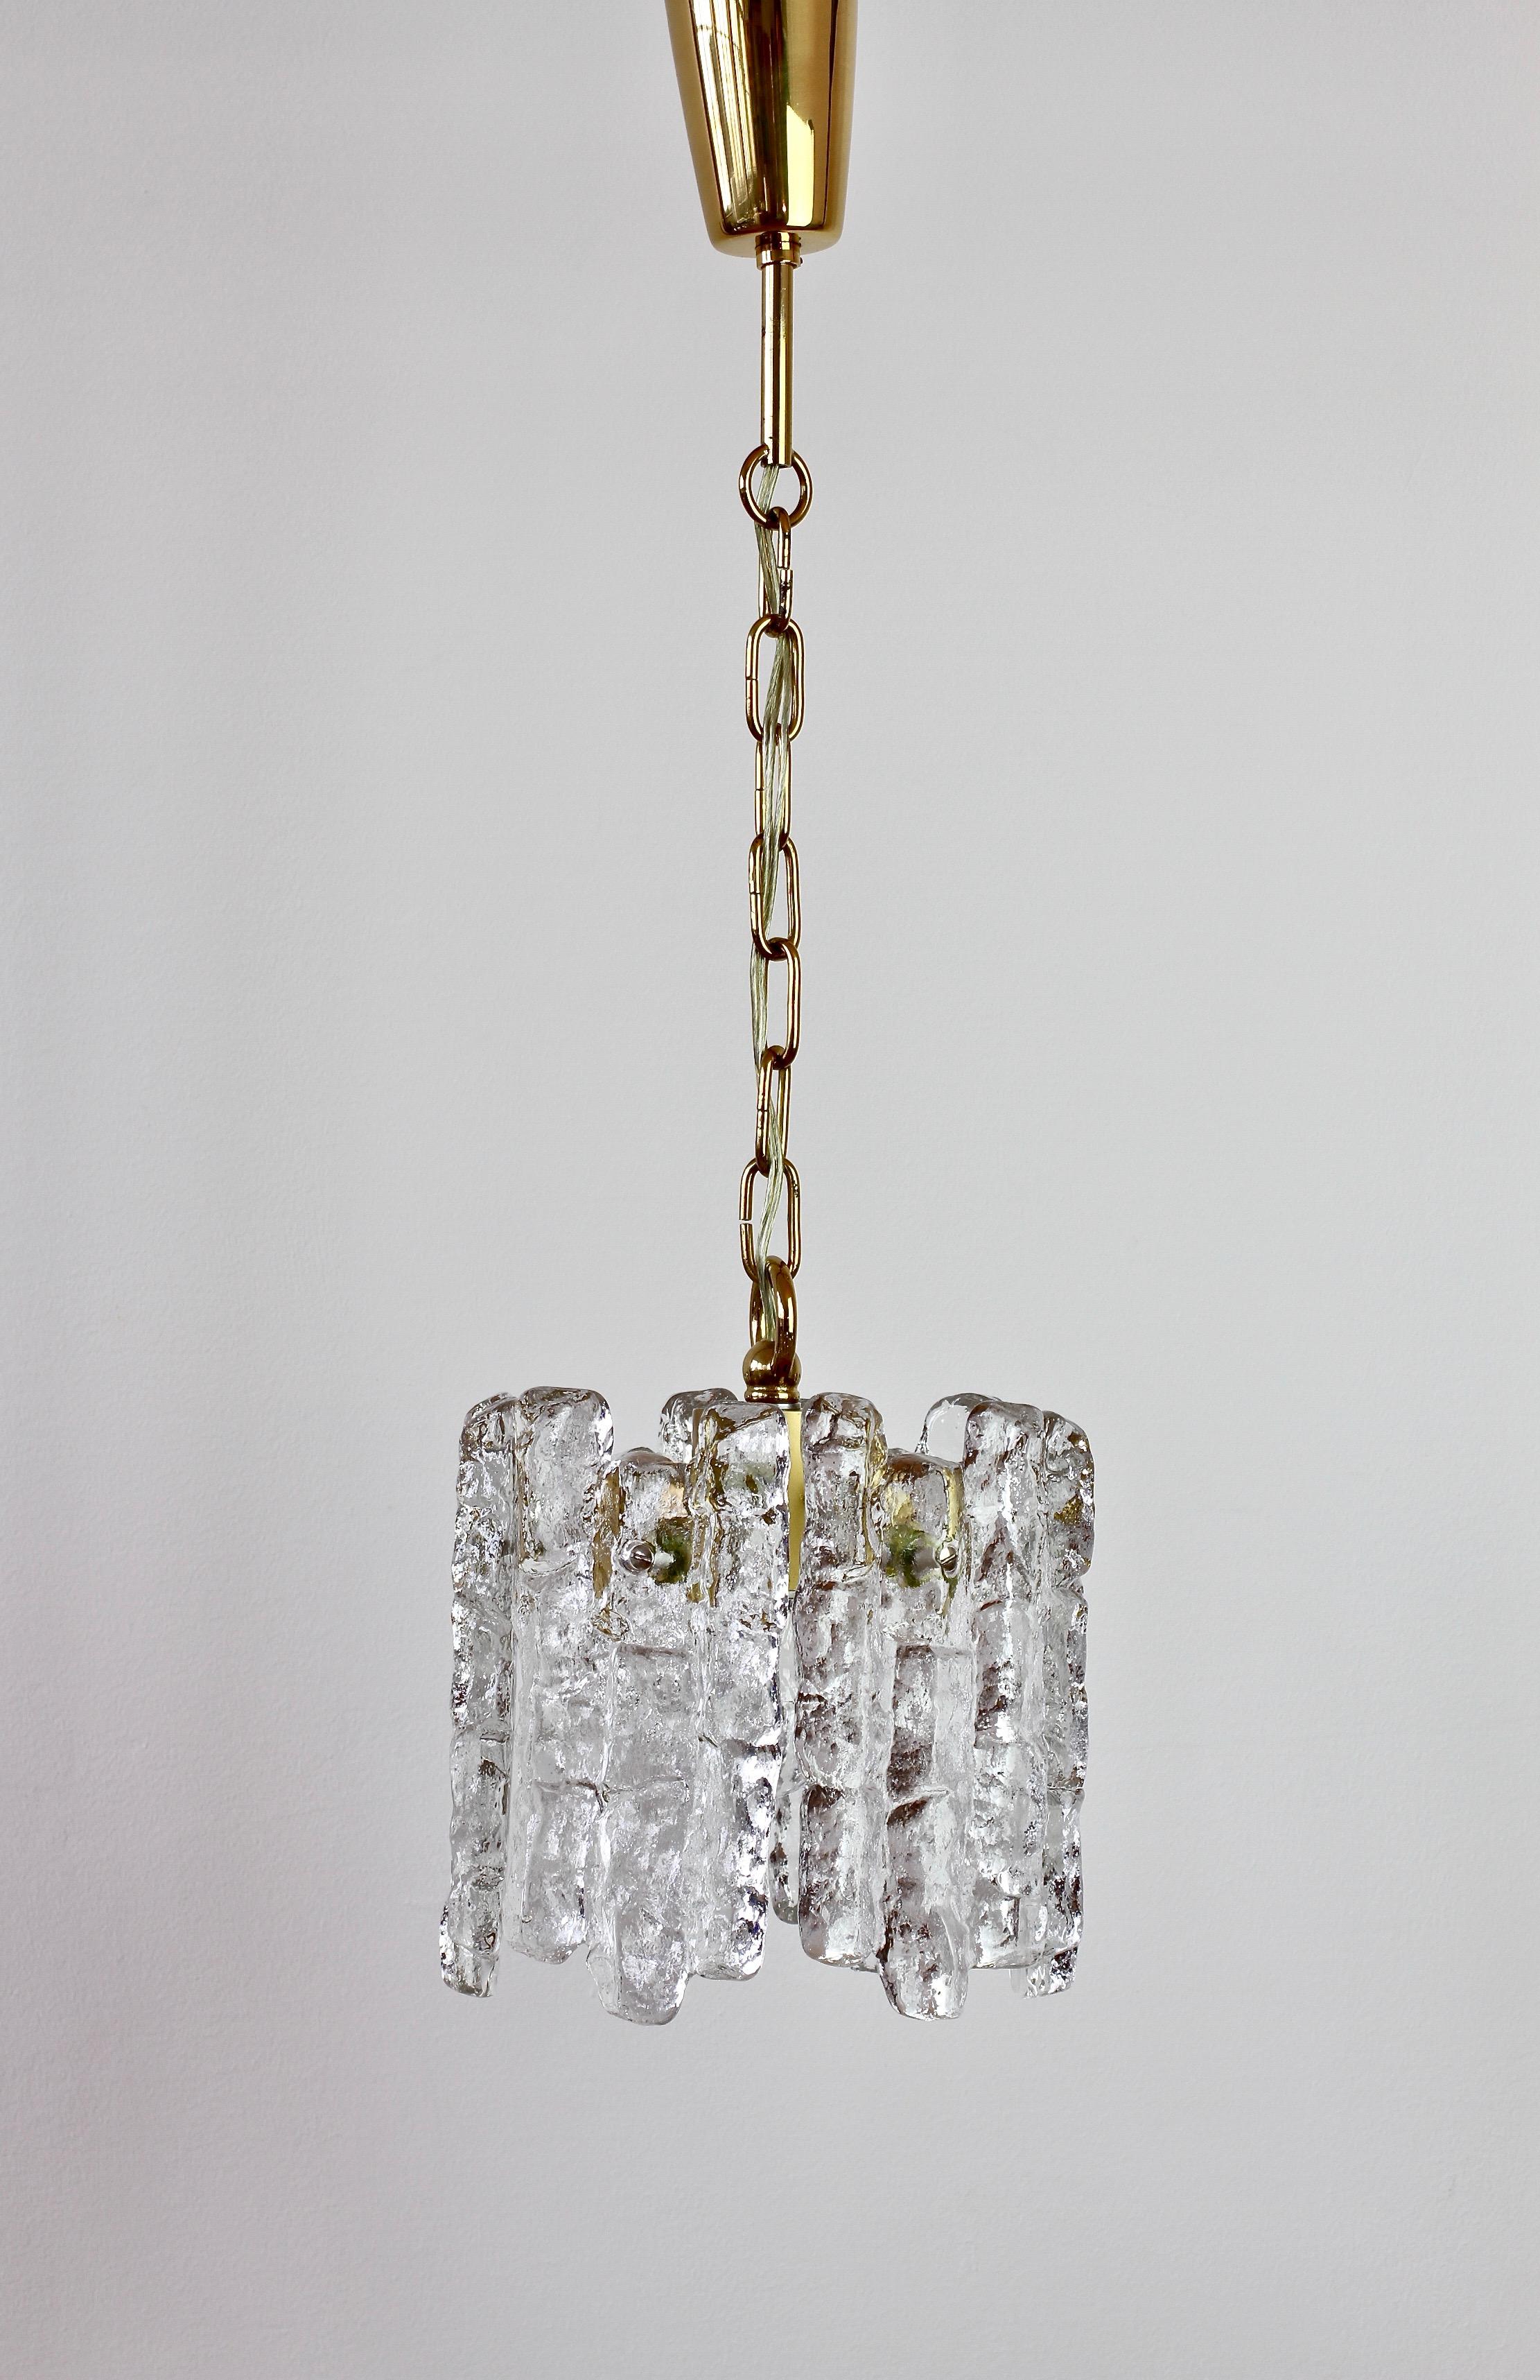 Vintage Mitte des Jahrhunderts Österreich gemacht texturiert klar Eisglas Decke Pendelleuchte oder Lampe von Kalmar, ca. 1960. Sechs hängende Glaselemente, die an schmelzende Eiskristalle erinnern, hängen an einer vergoldeten Messinghalterung.